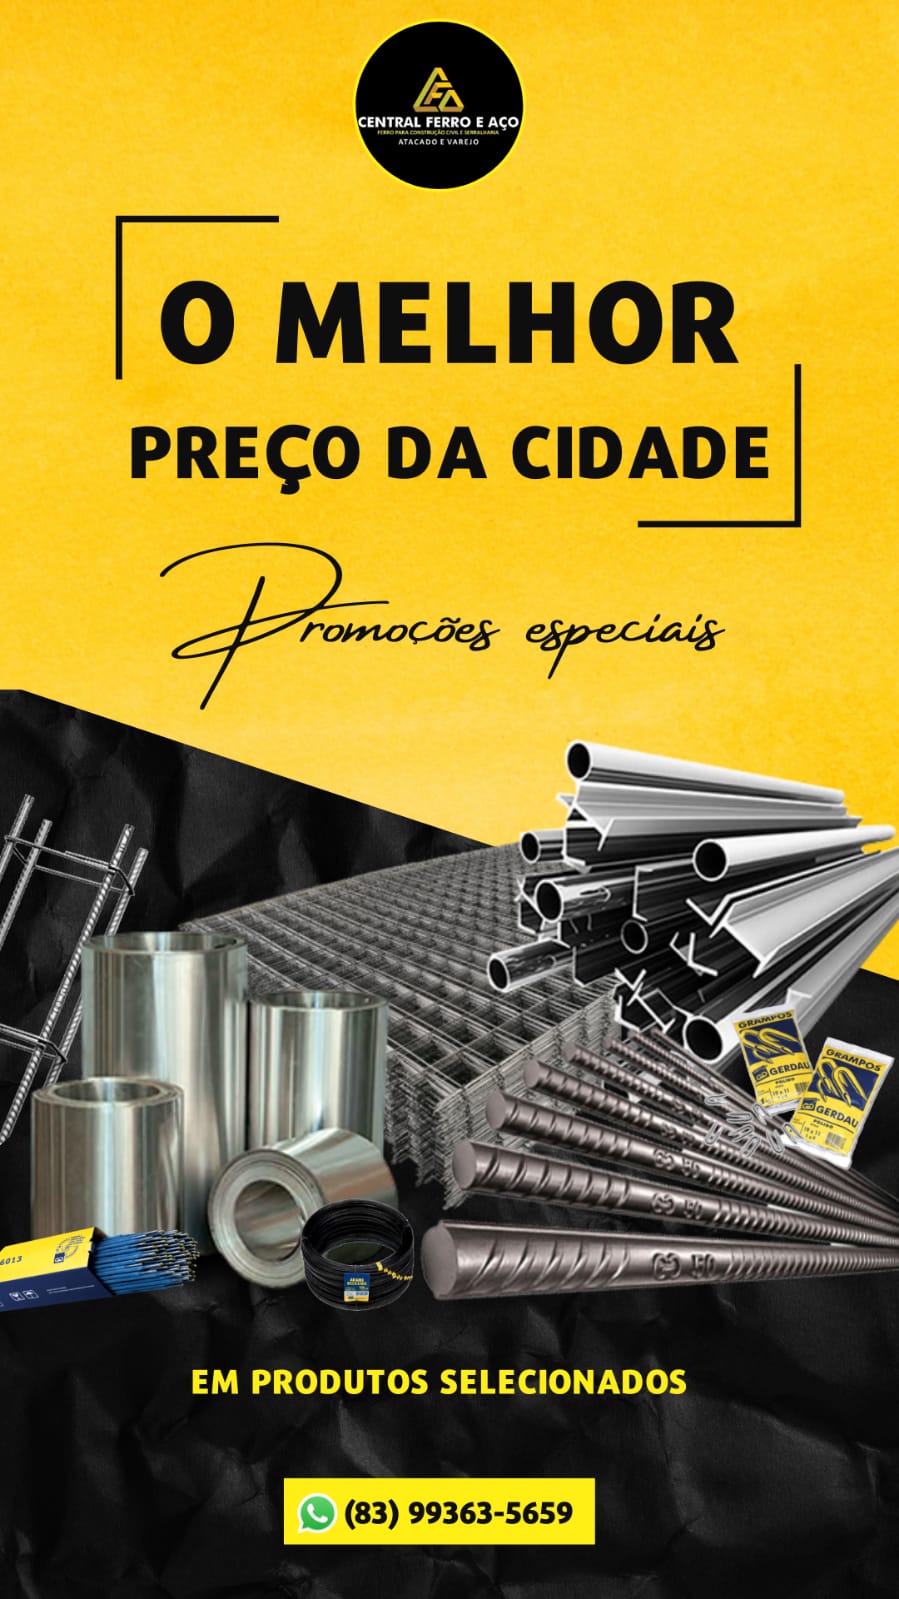 IMG-20220919-WA0067 Qualidade, bom atendimento e o melhor preço, você encontra na Central Ferro e Aço em Monteiro.